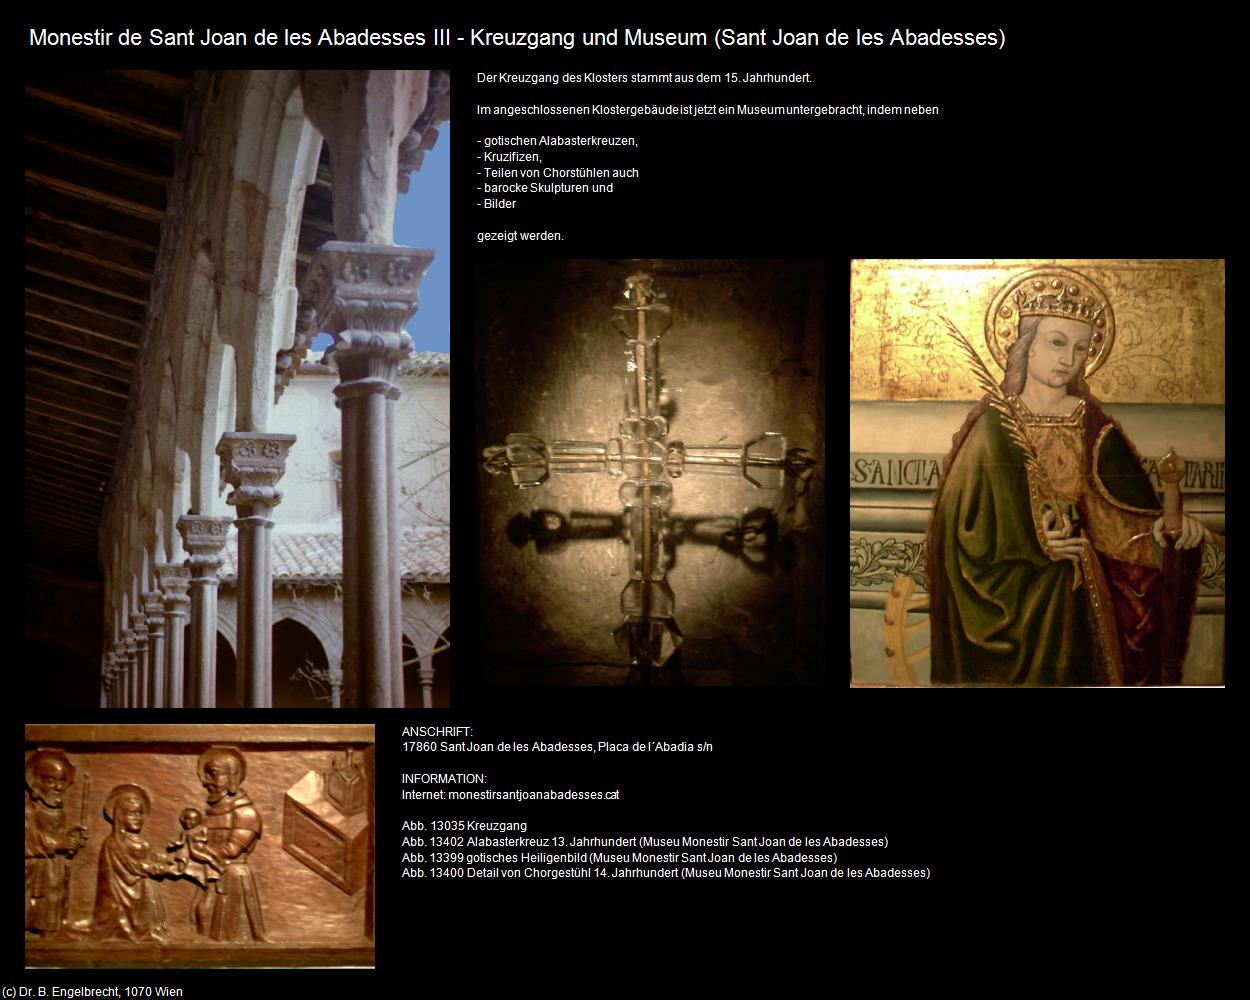 Monestir Sant Joan-Museum (Sant Joan de les Abadesses) in KATALONIEN